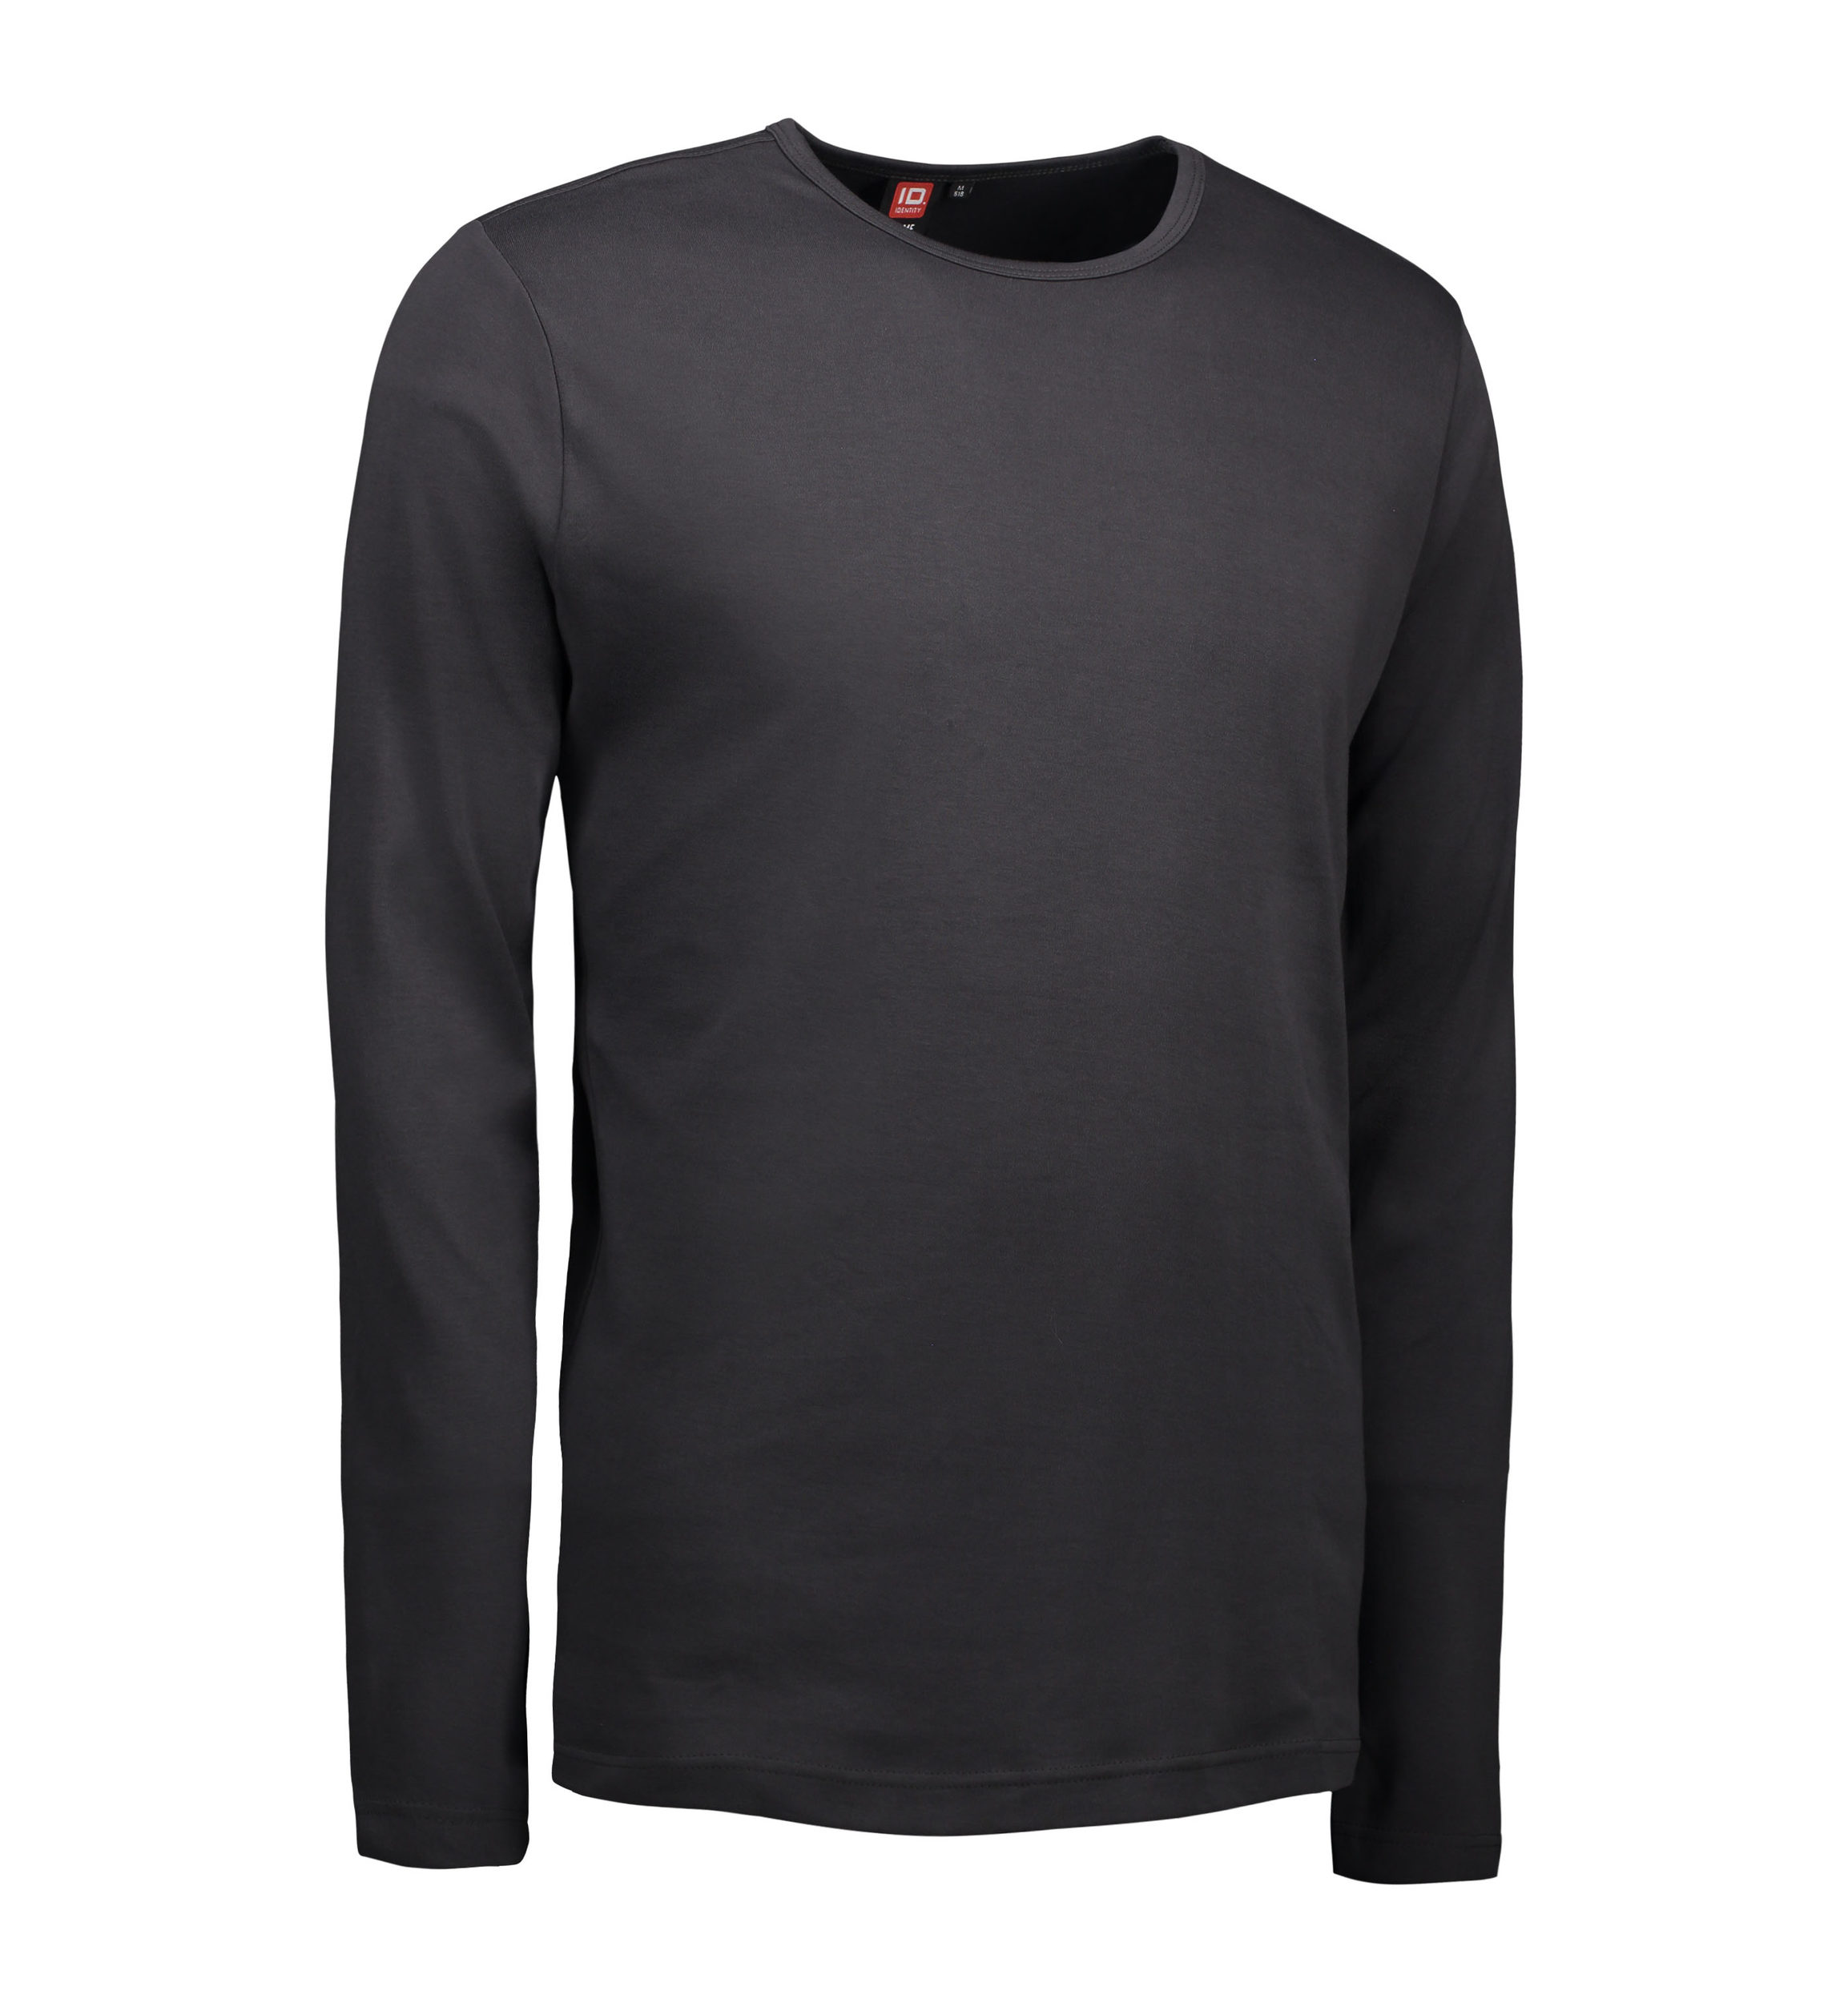 Se Koks grå langærmet t-shirt til mænd - L hos Sygeplejebutikken.dk